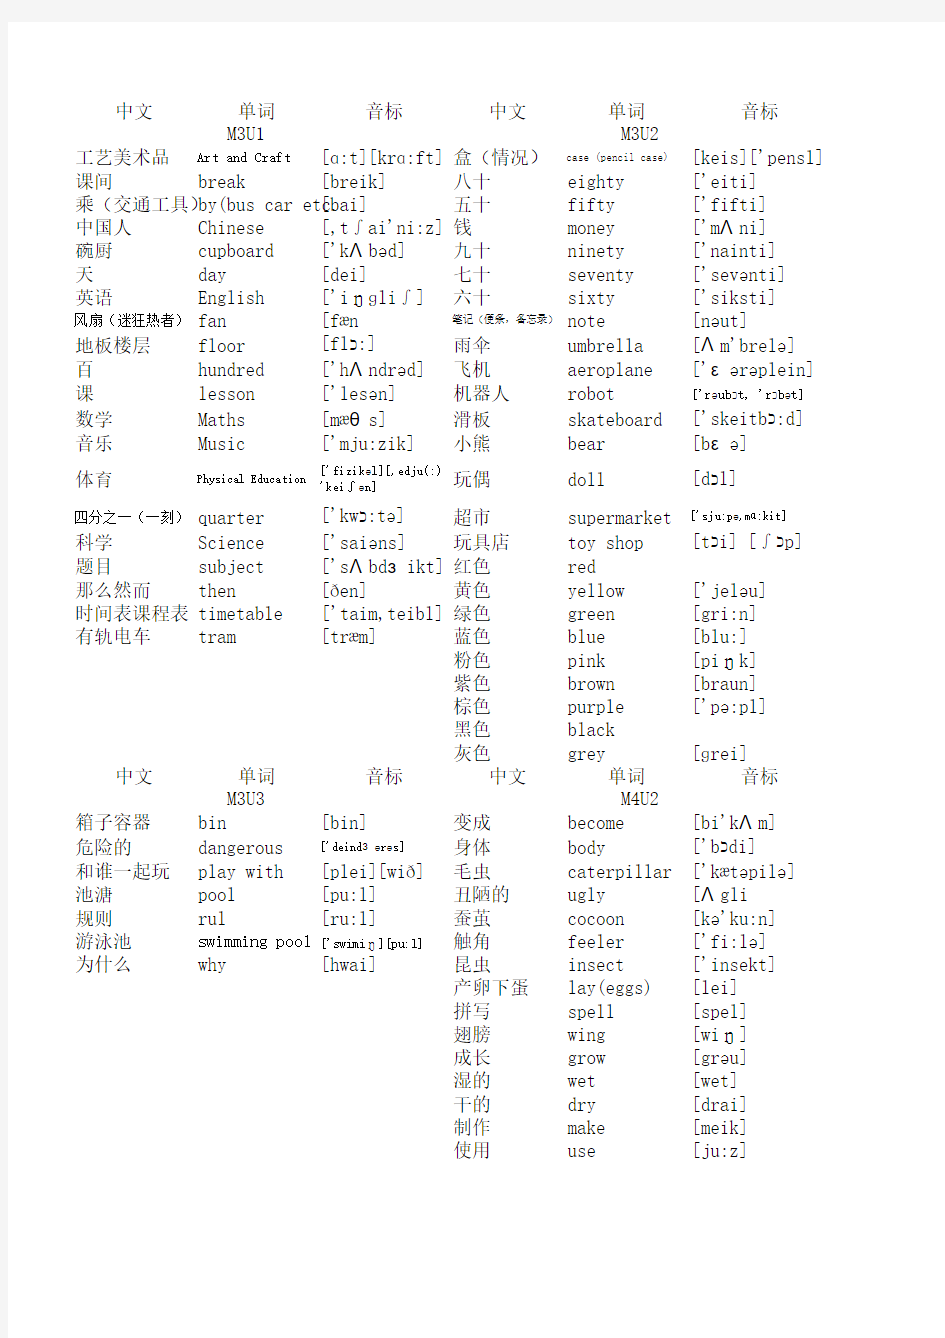 上海版牛津小学英语单词表(带音标)